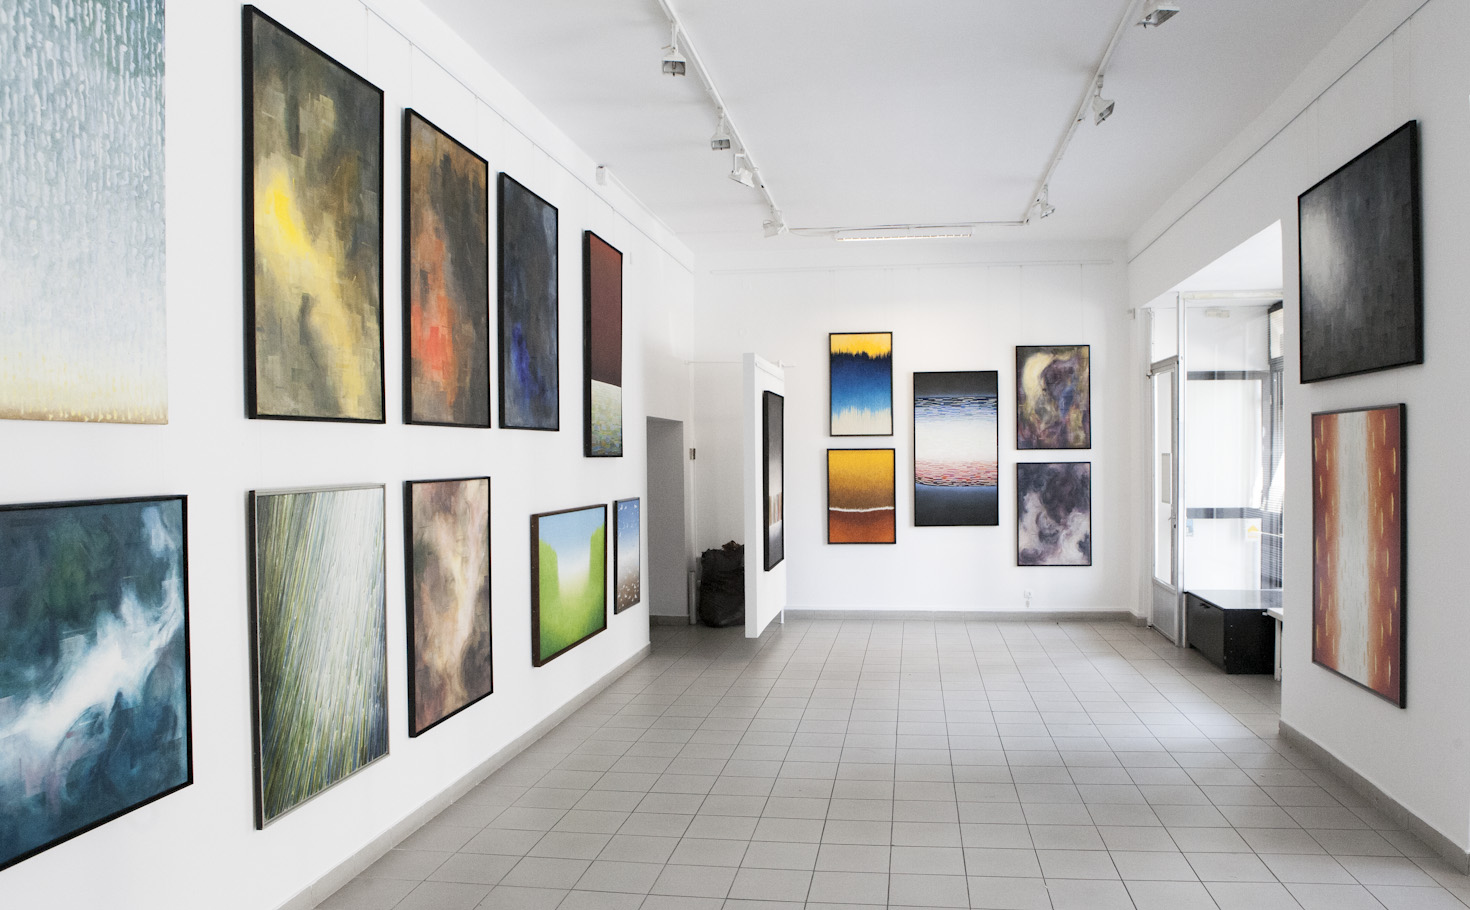 Malarstwo młodych, wystawa w Galerii Test Warszawa 2016 rok, Olga Skorża, Marcin Bielski, Jan Kośmieja, Michał Jan Wielowiejski.